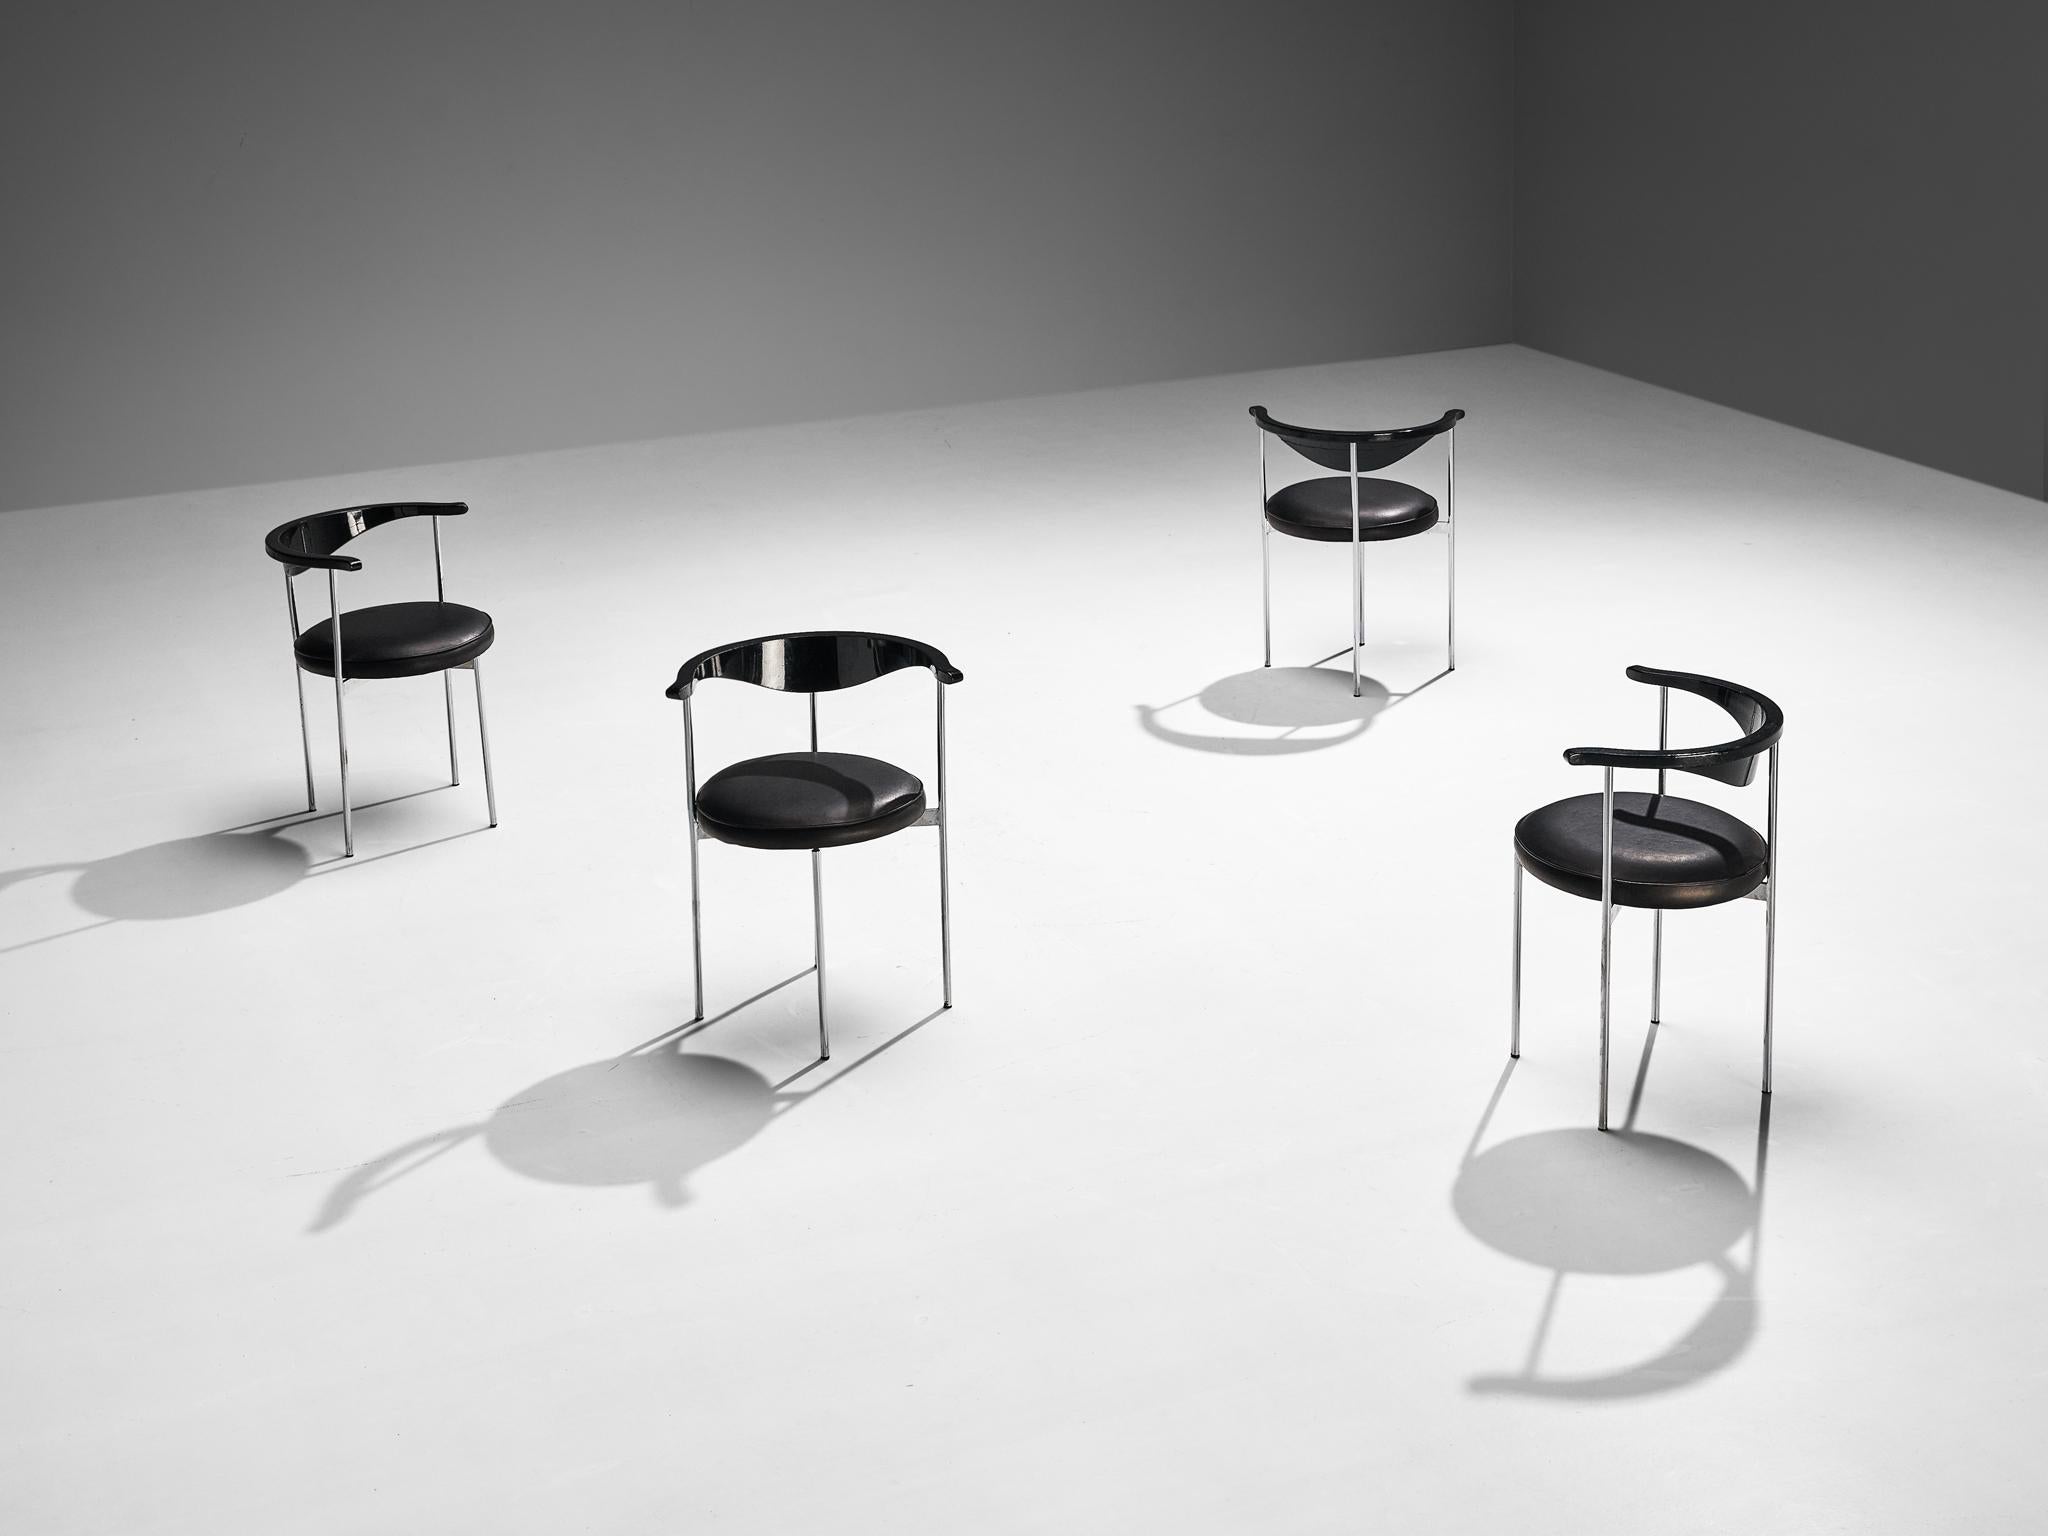 Frederik Sieck pour Fritz Hansen, paire de chaises modèle 3200, skaï, bois laqué noir, métal, Danemark, design 1962

Cet ensemble industriel de quatre chaises a été conçu par le designer suédois Frederik Sieck pour Fritz Hansen. La chaise ronde est